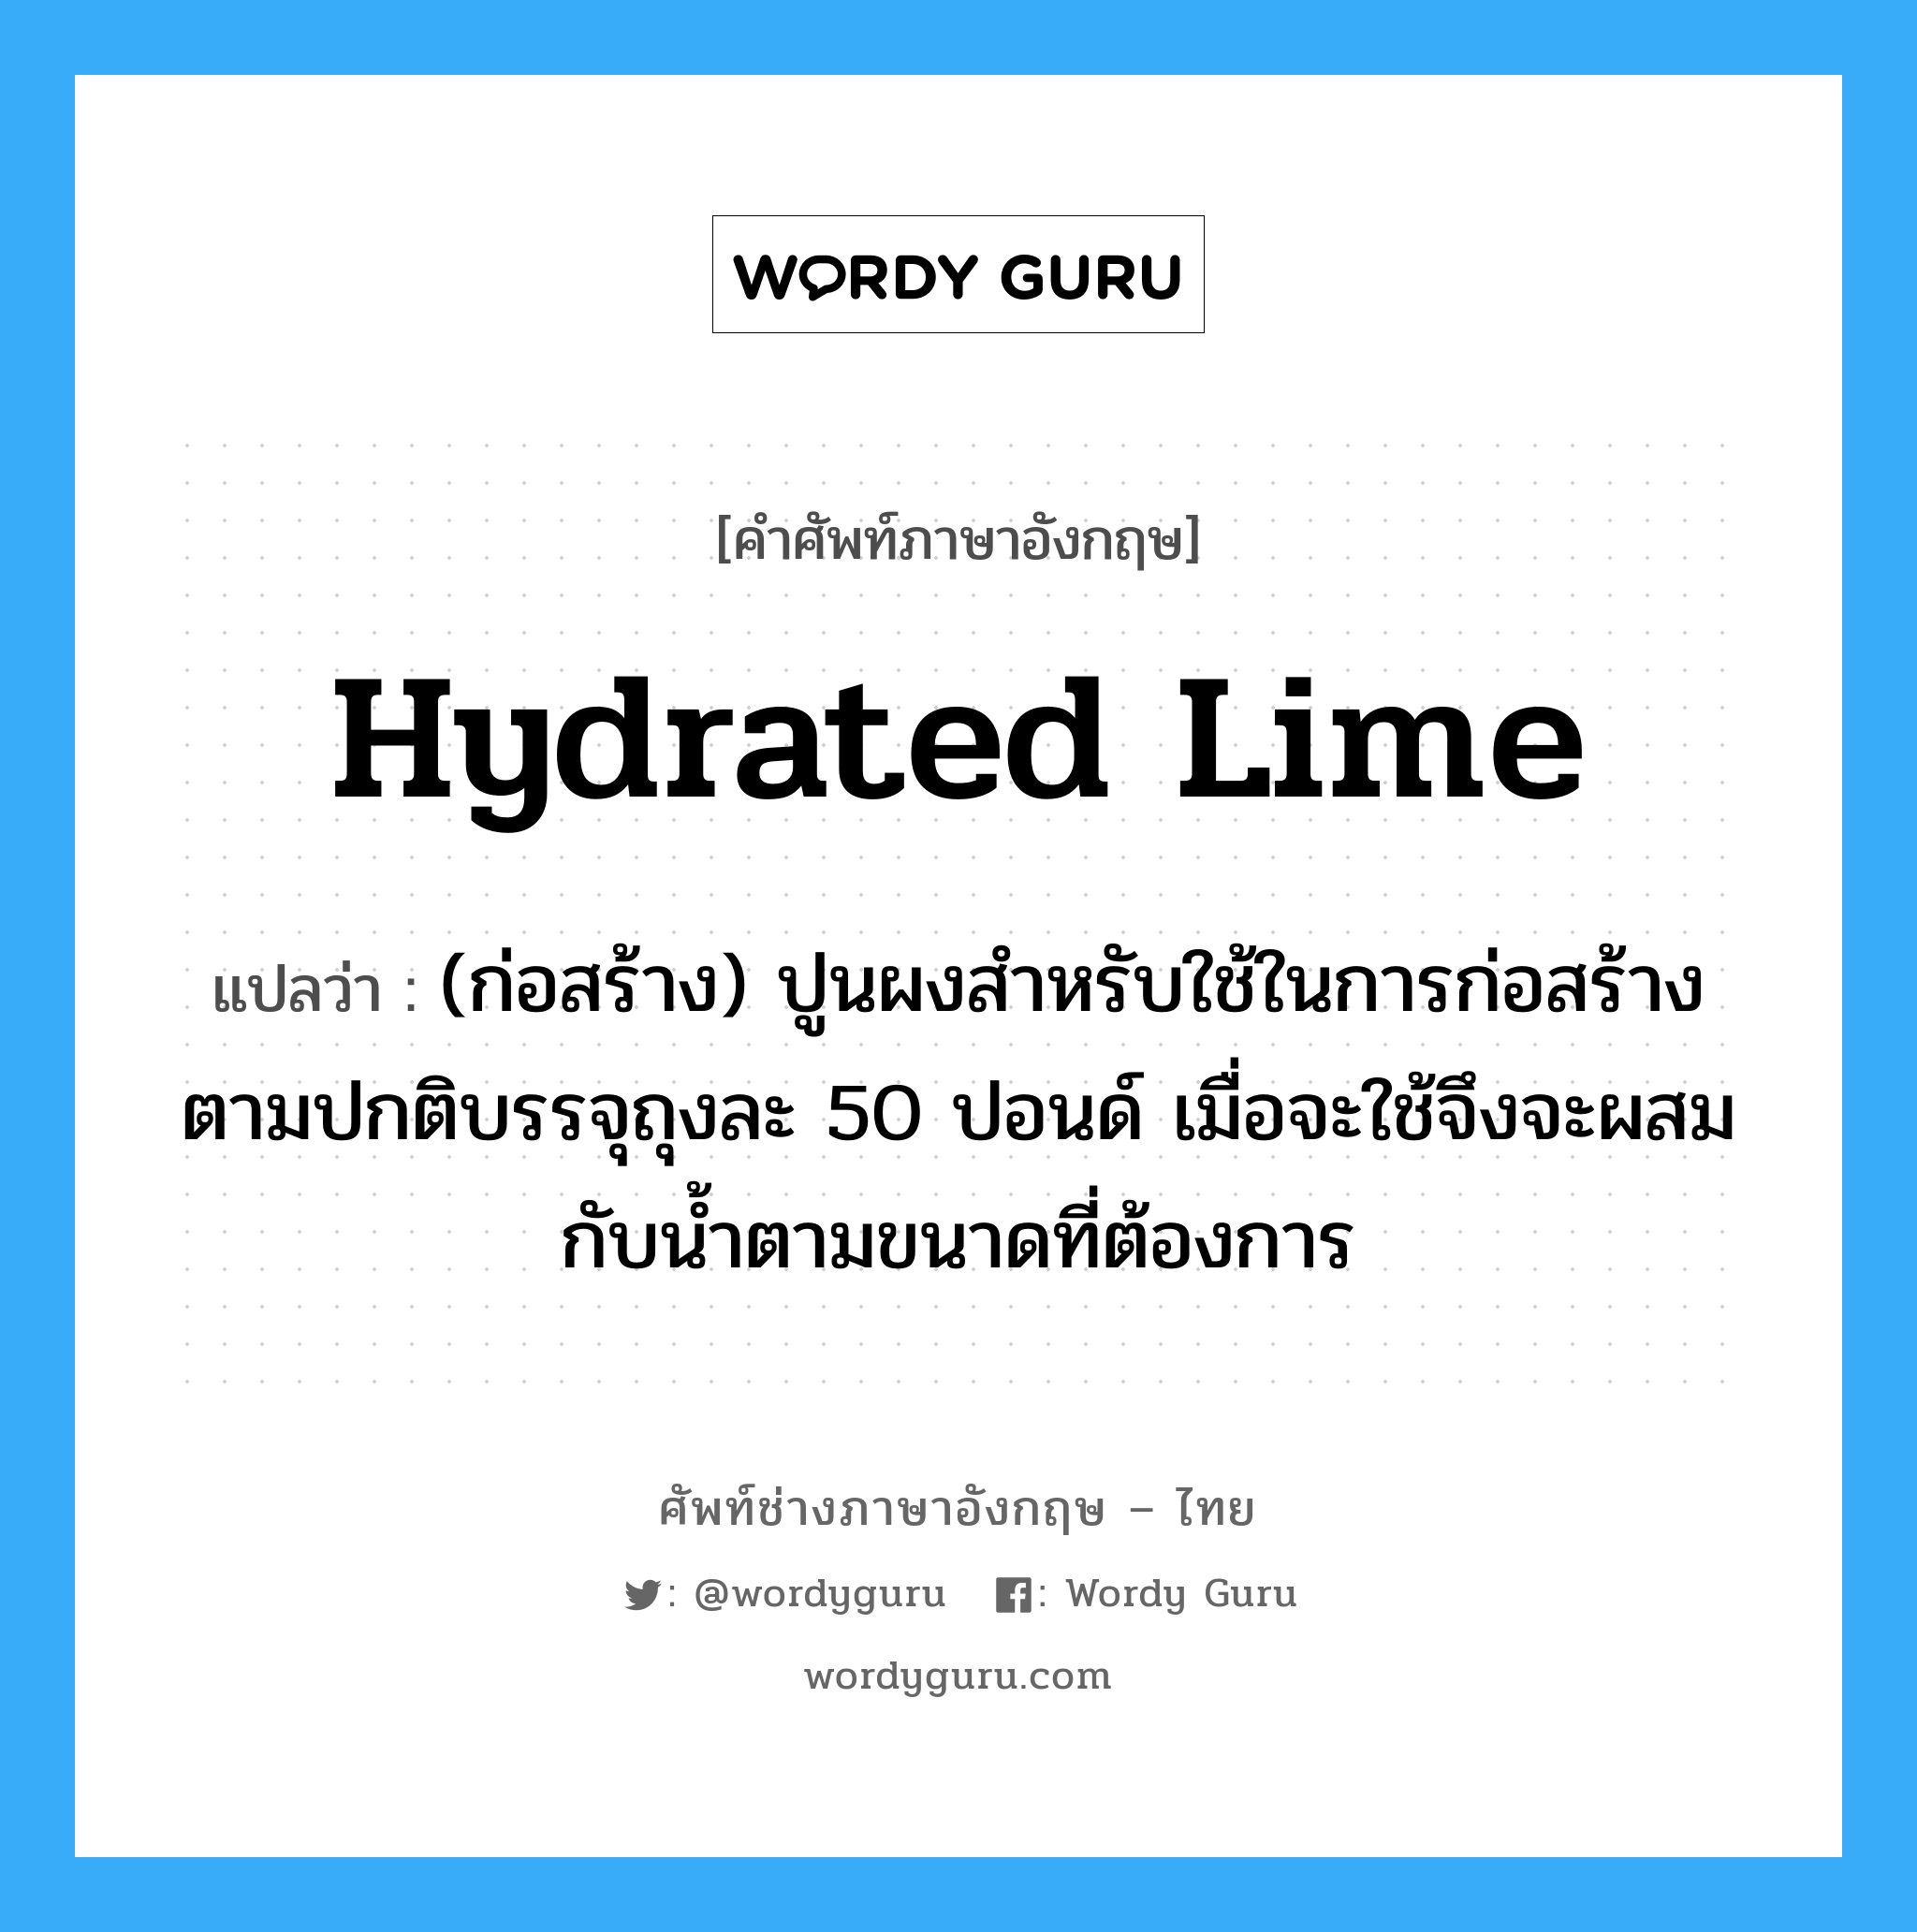 hydrated lime แปลว่า?, คำศัพท์ช่างภาษาอังกฤษ - ไทย hydrated lime คำศัพท์ภาษาอังกฤษ hydrated lime แปลว่า (ก่อสร้าง) ปูนผงสำหรับใช้ในการก่อสร้าง ตามปกติบรรจุถุงละ 50 ปอนด์ เมื่อจะใช้จึงจะผสมกับน้ำตามขนาดที่ต้องการ